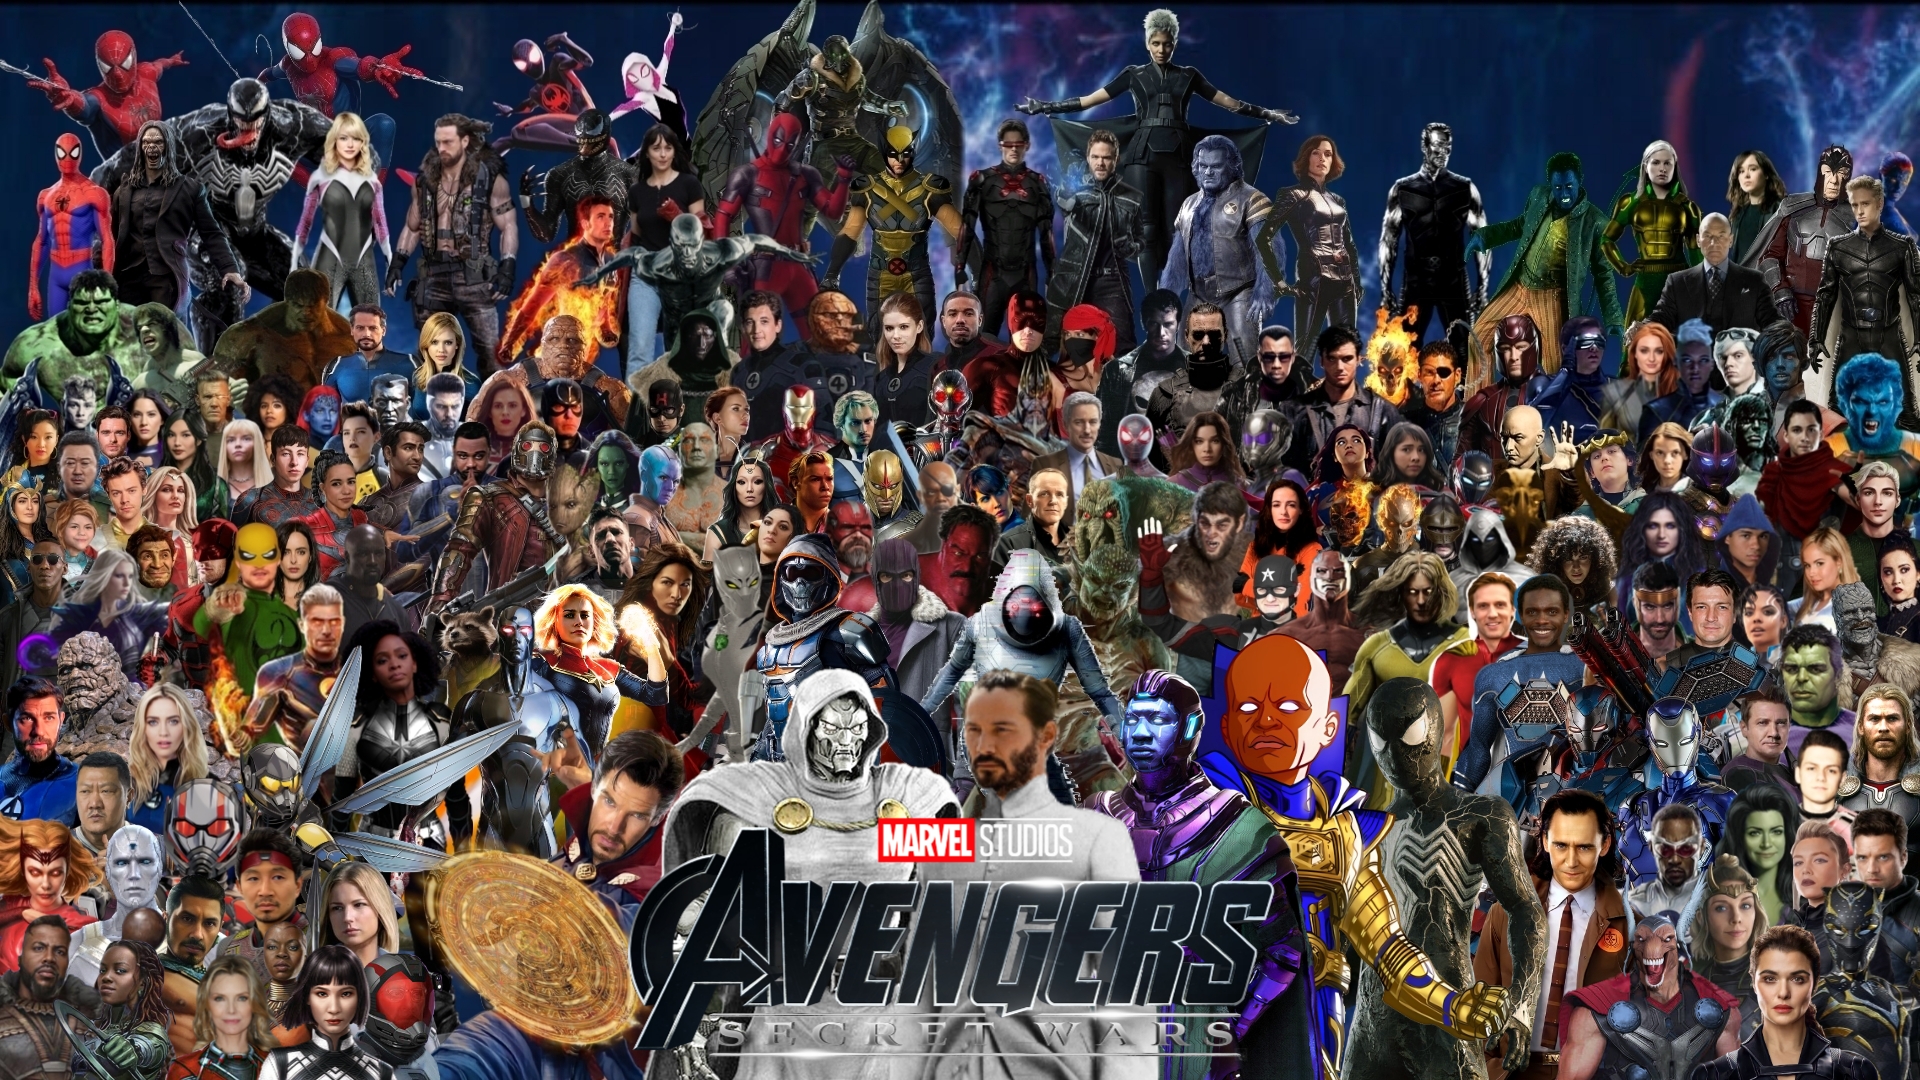 Avengers: Secret Wars Fan Casting on myCast